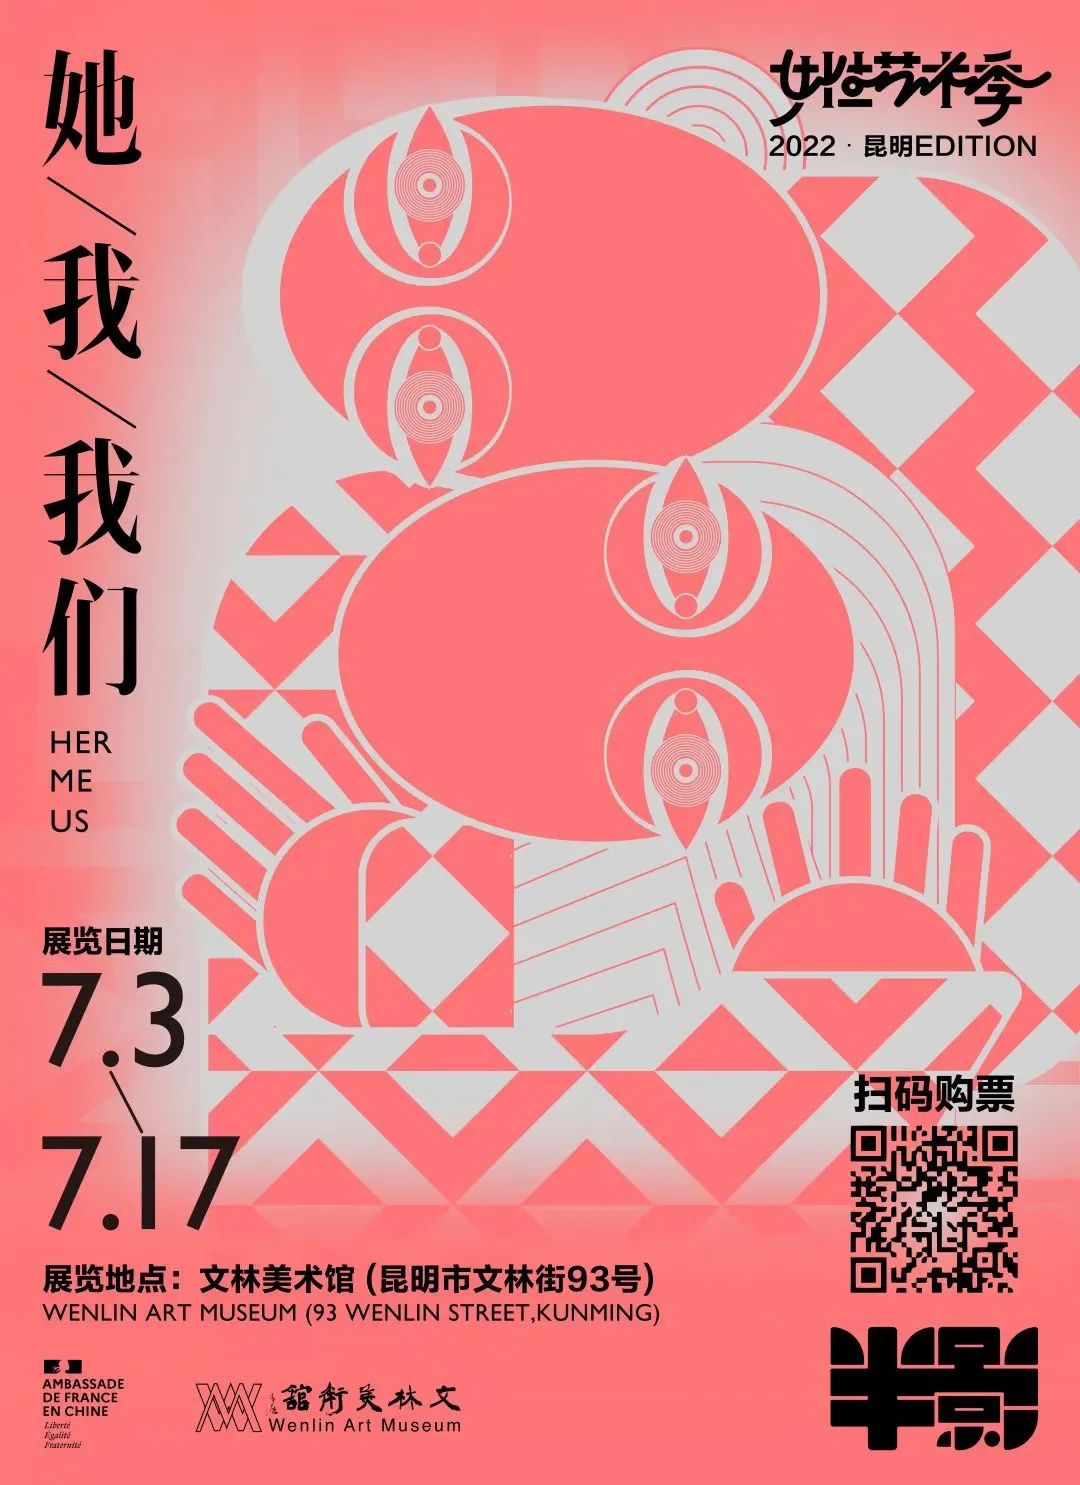 优秀中文海报设计作品分享(1)